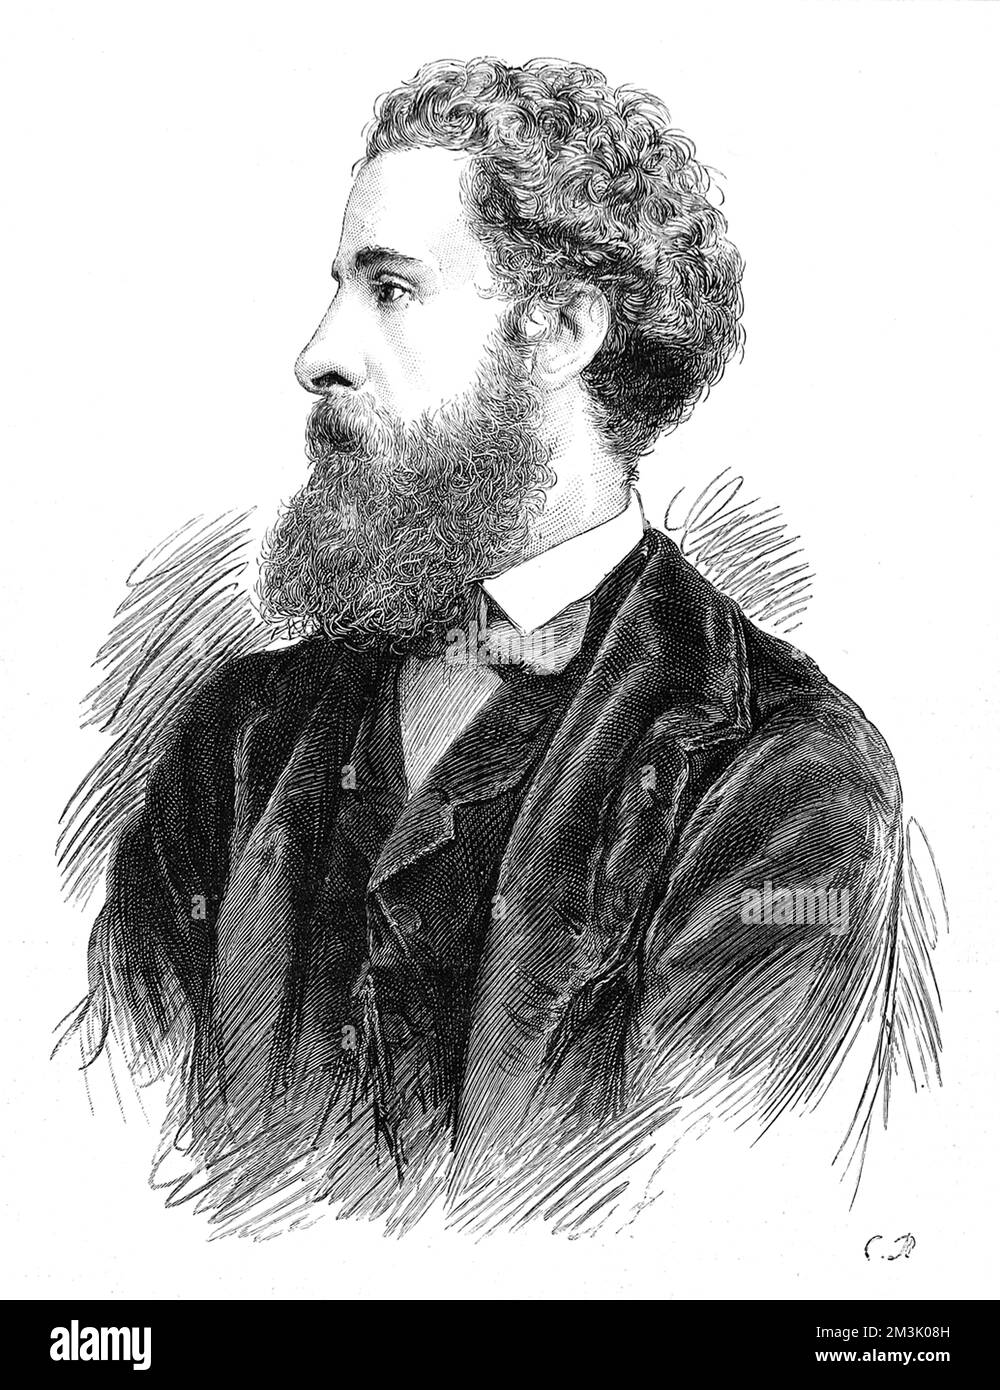 Edward Robert Bulwer-Lytton, 1st comte de Lytton (1831 - 1891), poète anglais diplomate et politicien, peu après sa nomination comme Viceroy de l'Inde. Ses romans et poèmes ont été publiés sous le pseudonyme Owen Meredith. Date: 1876 Banque D'Images